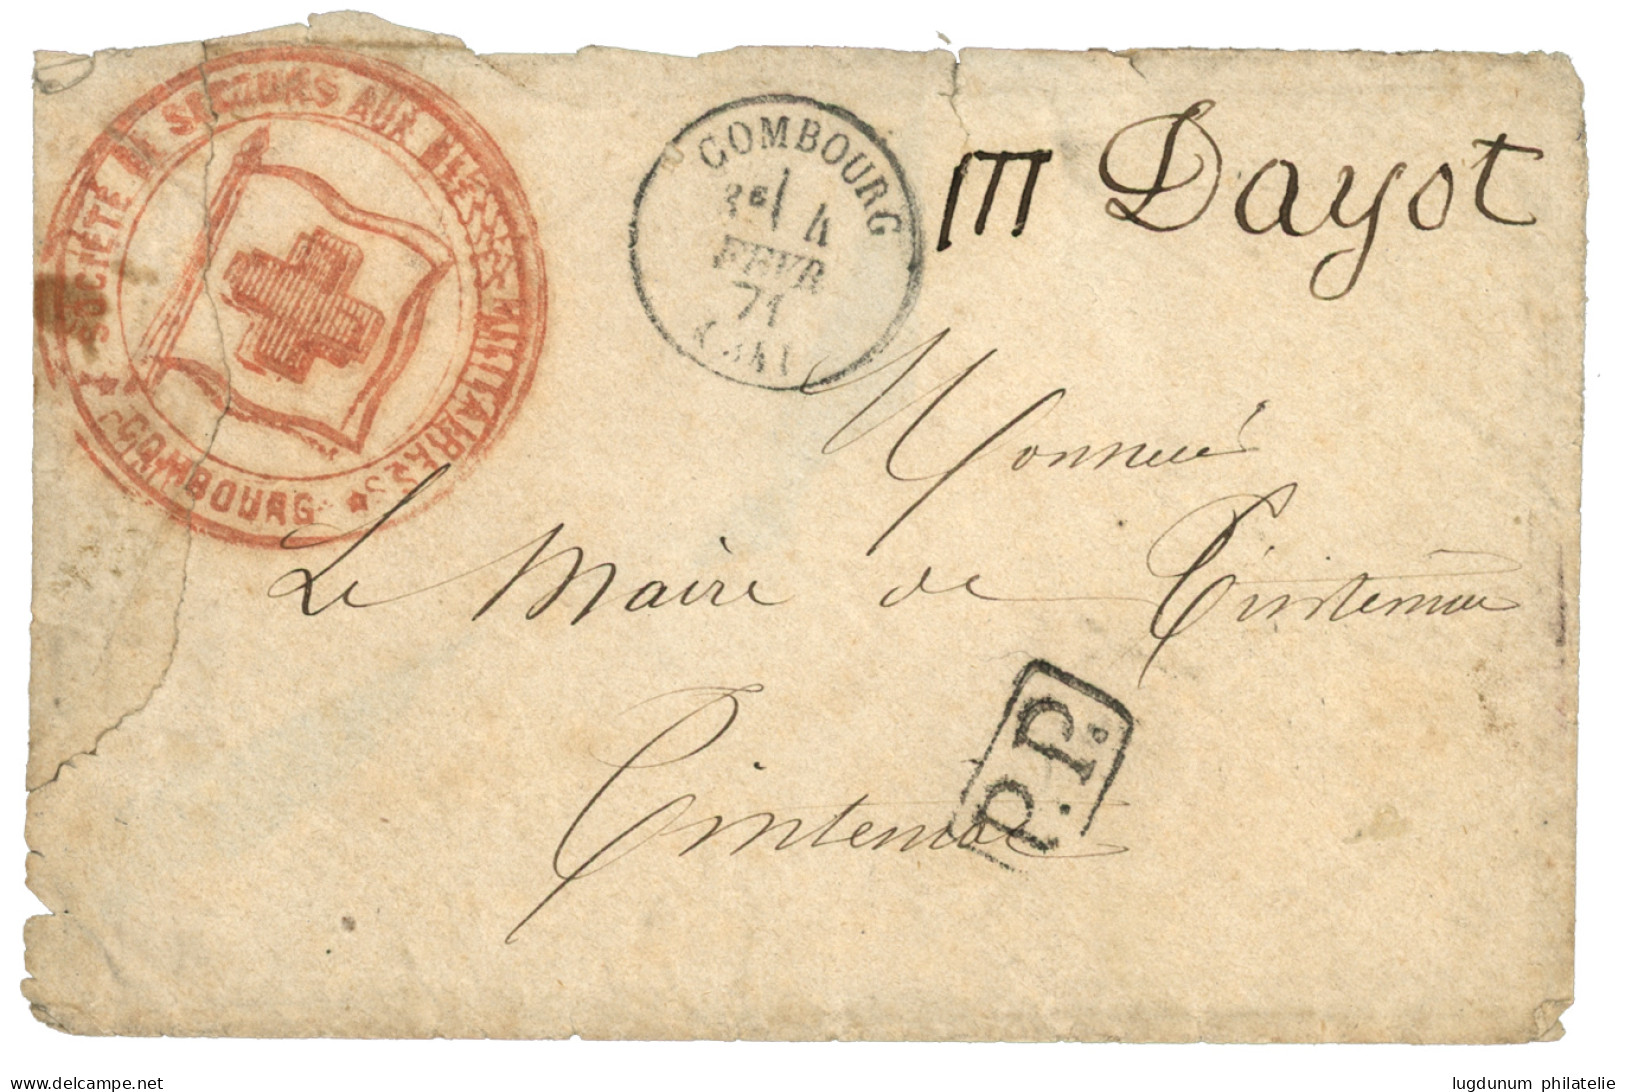 1871 Cachet CROIX-ROUGE  SOCIETE DE SECOURS AUX BLESSES MILITAIRES COMBOURG + T.16 COMBOURG + P.P Sur Lettre (déchirure) - Krieg 1870